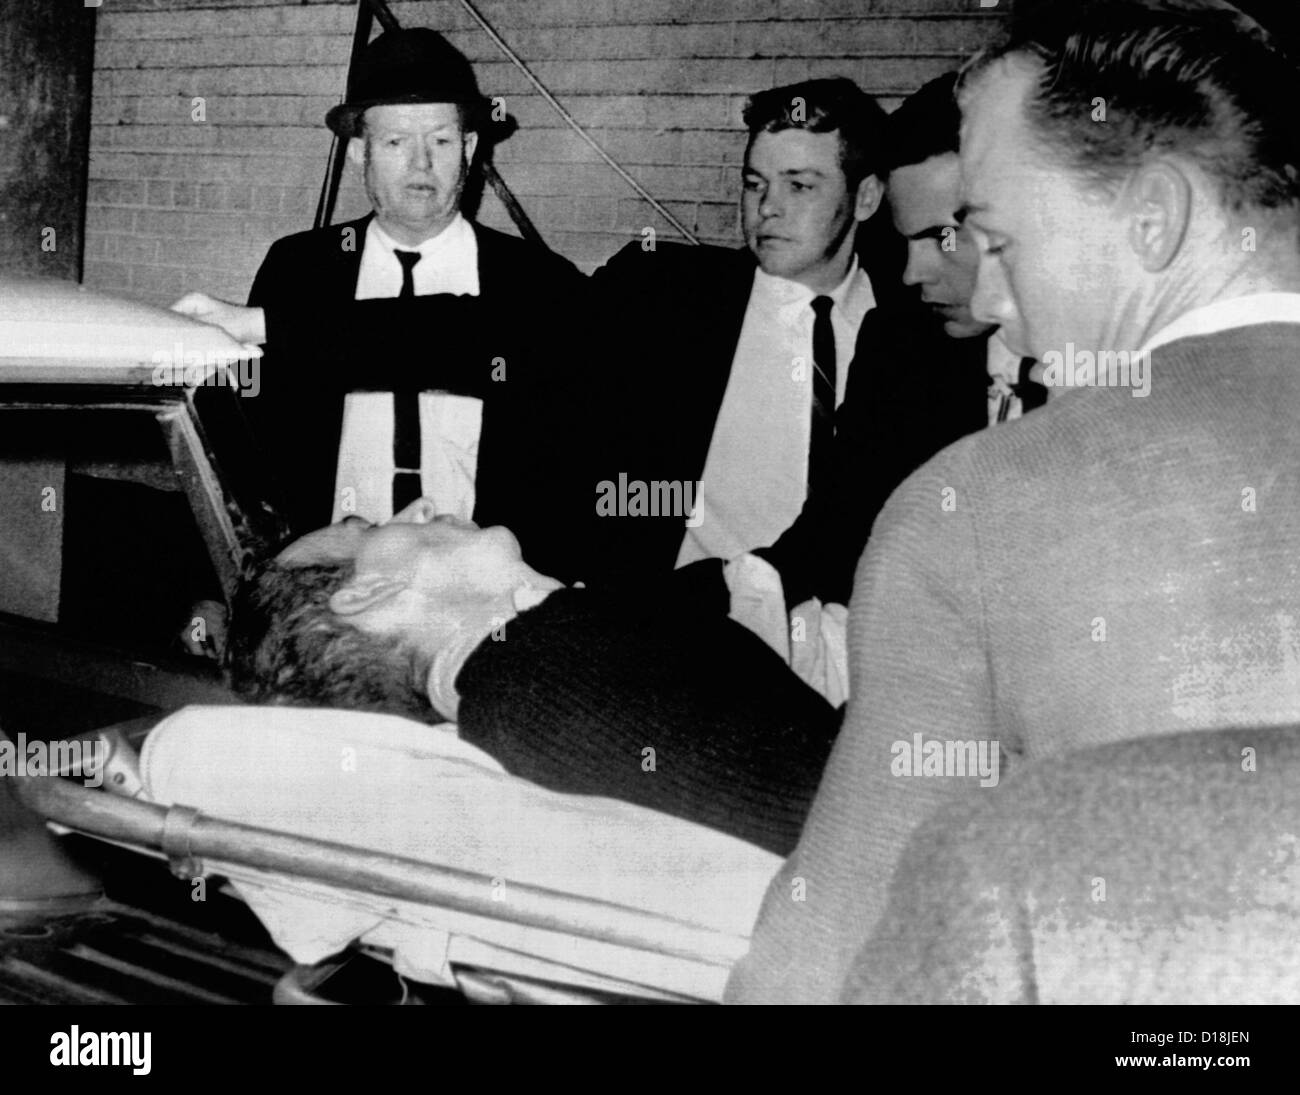 Assassin Lee Harvey Oswald sterben wird in Krankenwagen platziert, nachdem  er von Jack Ruby, in Dallas Polizei erschossen wurde. Oswald  Stockfotografie - Alamy